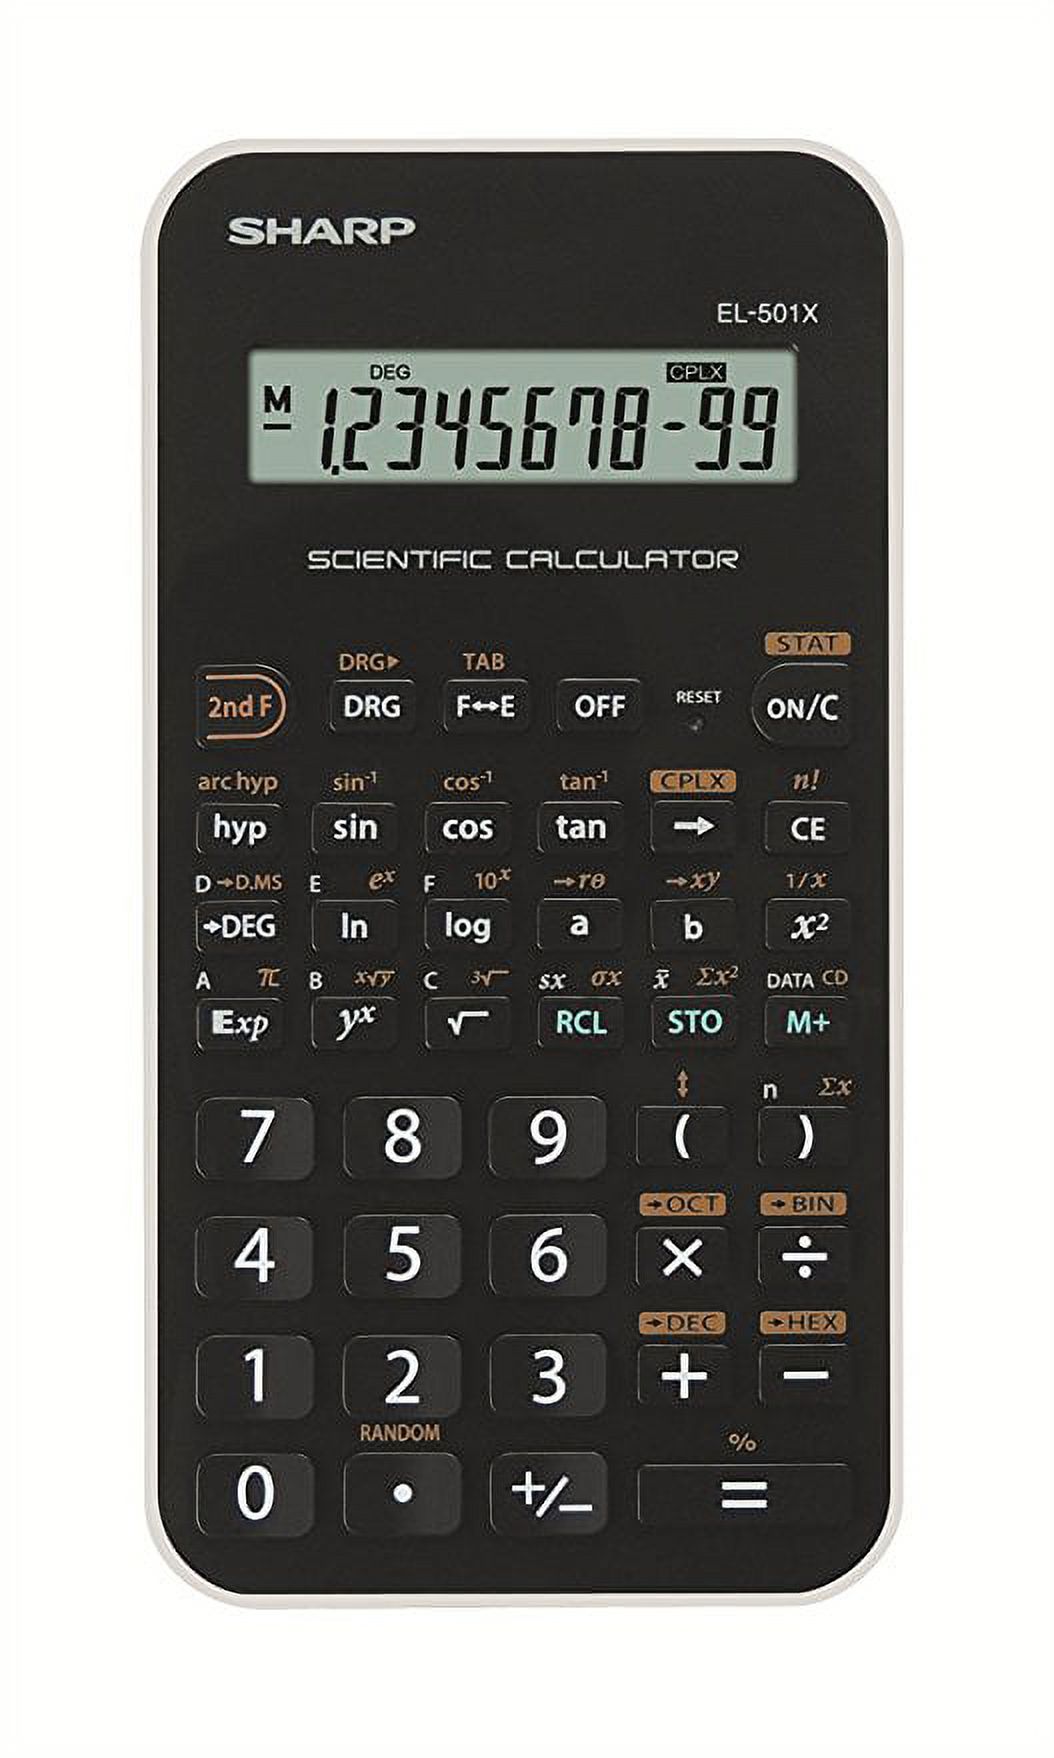 Sharp EL-501XBWH Scientific Calculator, Black - image 1 of 4